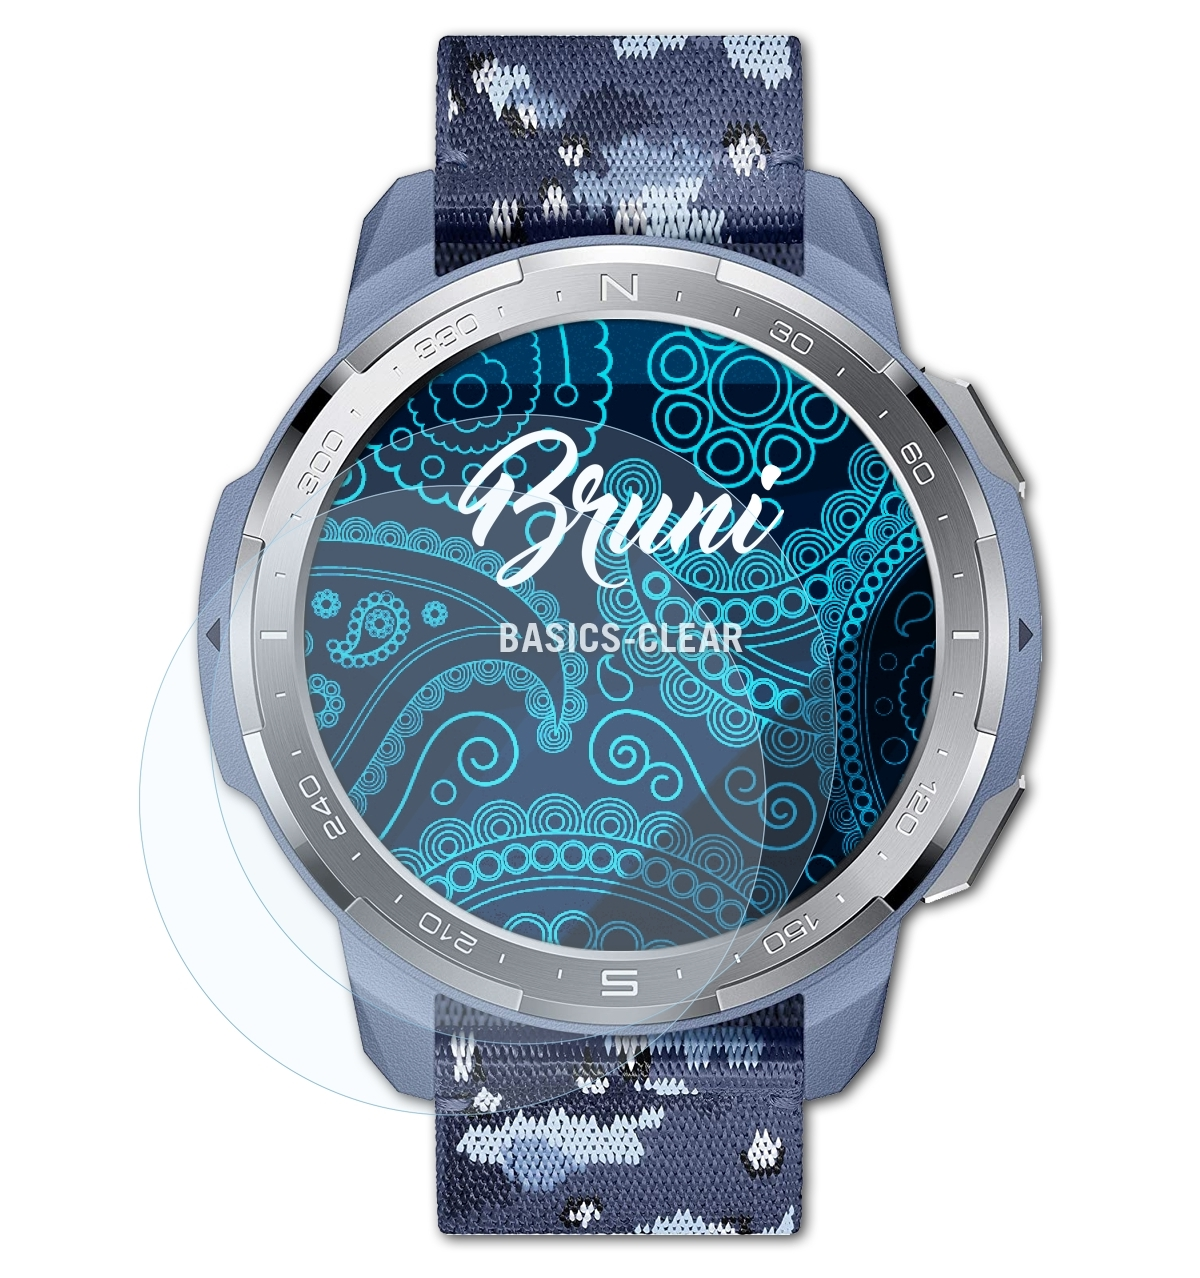 BRUNI 2x Basics-Clear Honor GS Pro) Schutzfolie(für Watch